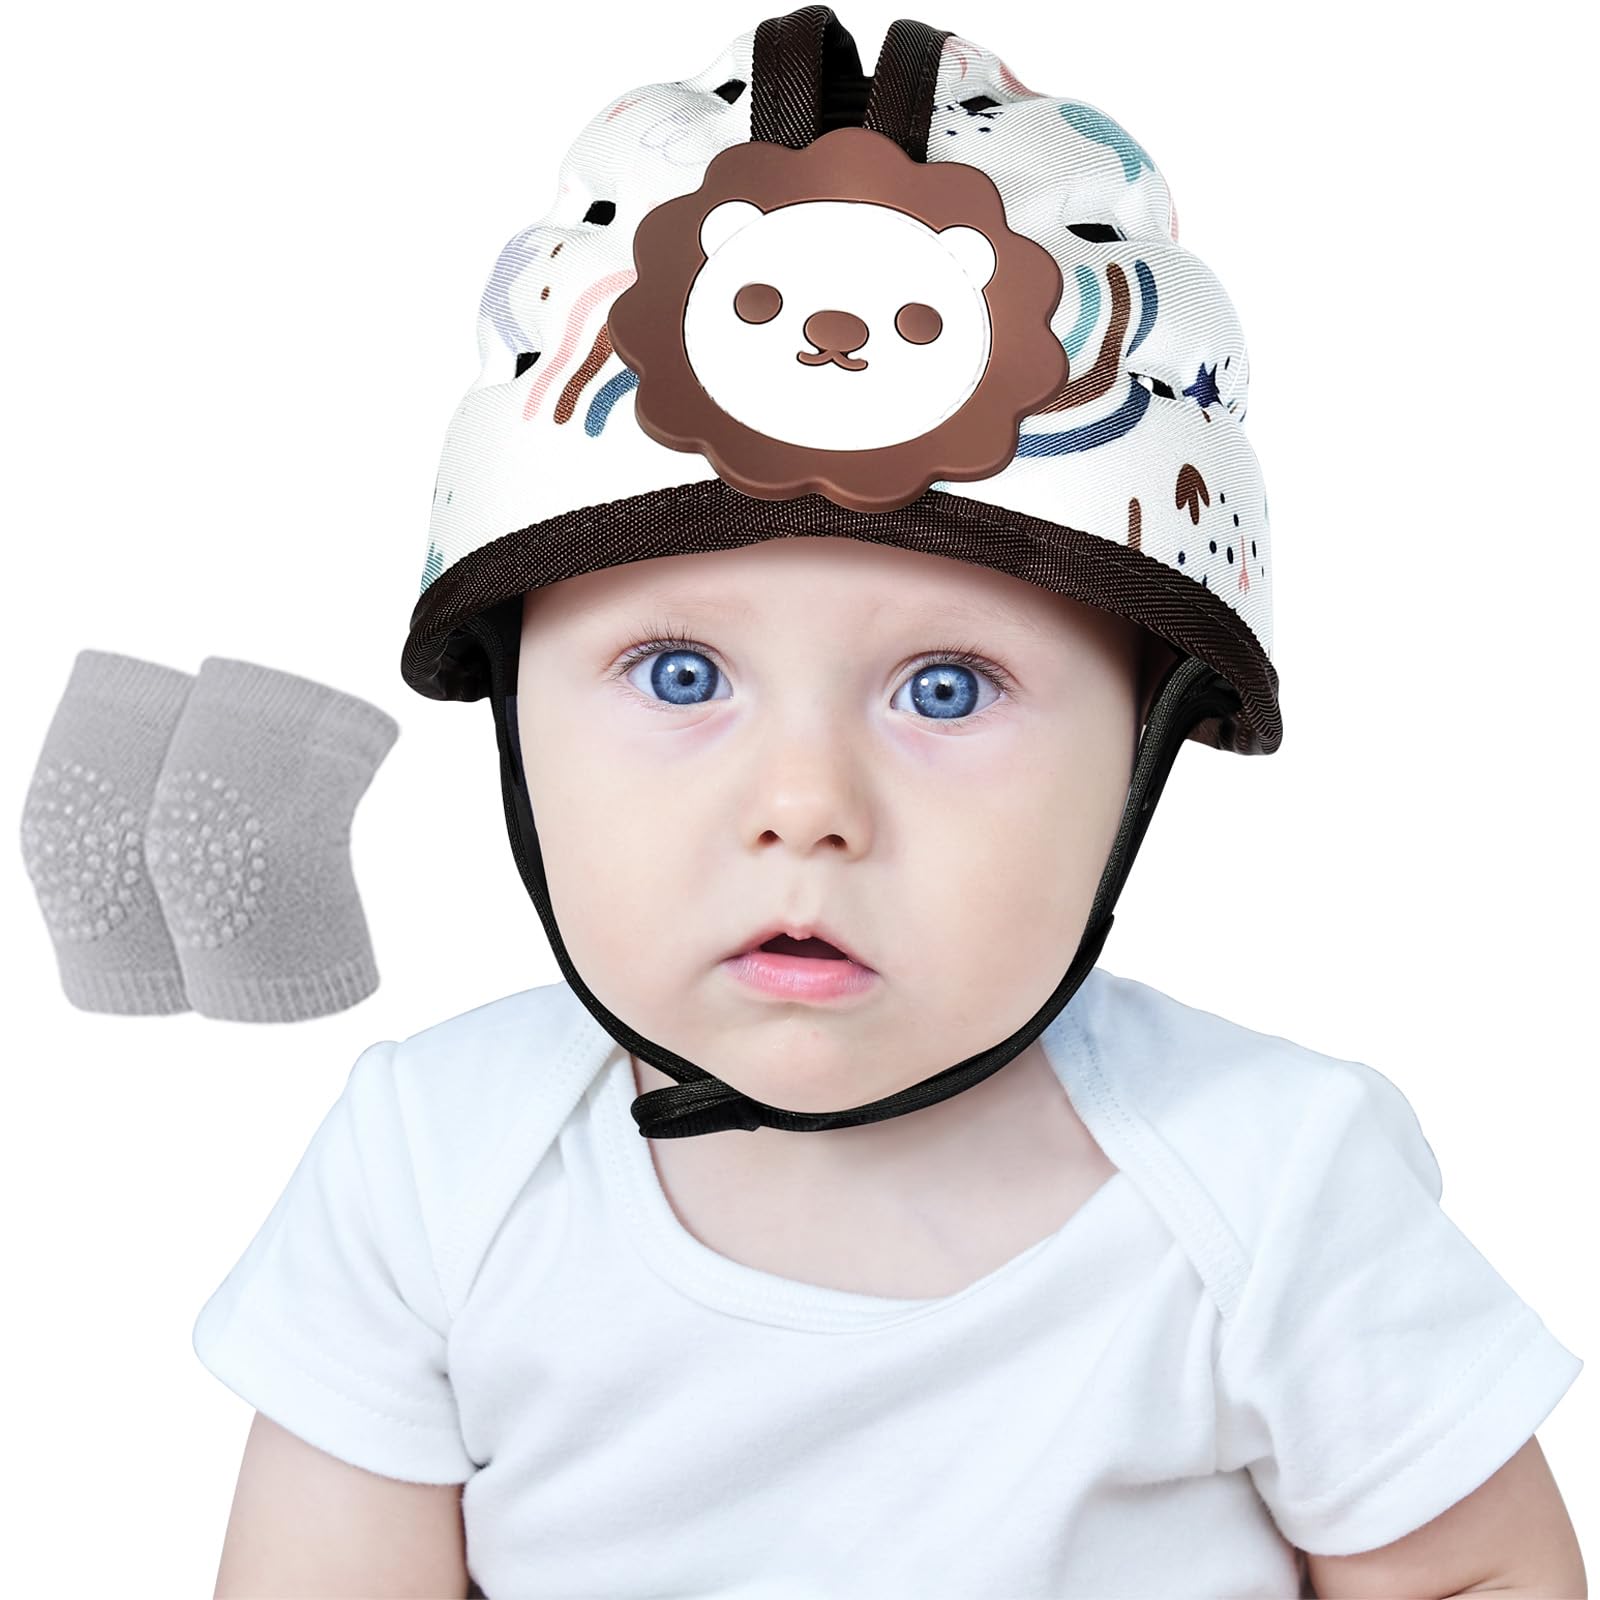 Orzbow Baby Helm,Atmungsaktiver Baby Kopfschutz zum Krabbeln und Gehen, Verstellbarer Baby Sicherheitshelm,Anti-Kollision,Ultraleicht,Hochwertige Baumwolle und EVA (Brauner Löwe)